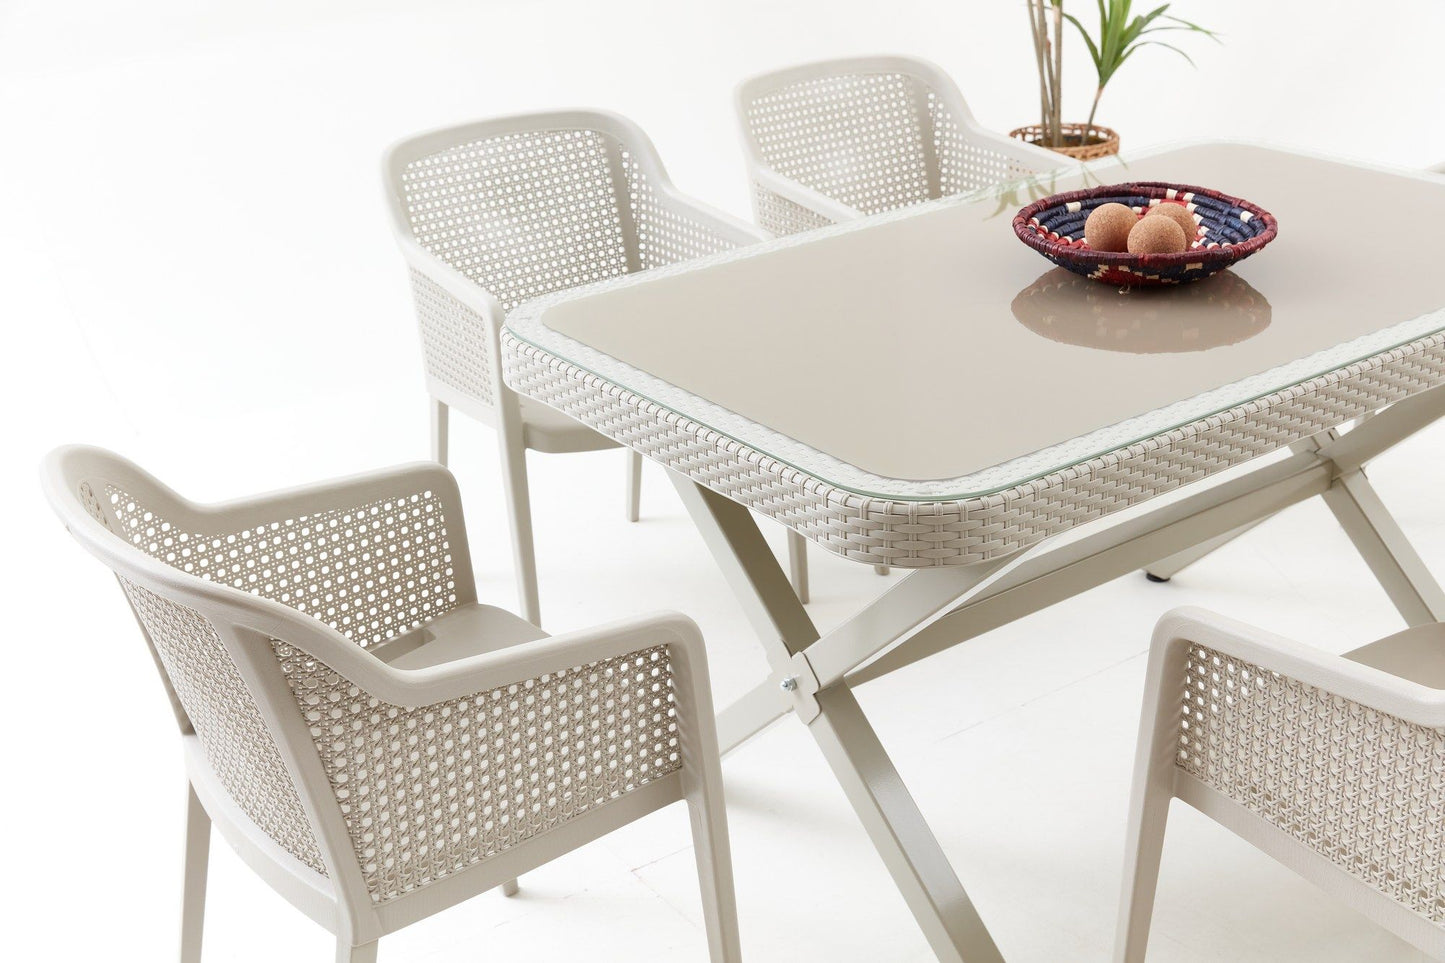 Saka Garden - Garden Table & Chairs Set (7 Pieces)